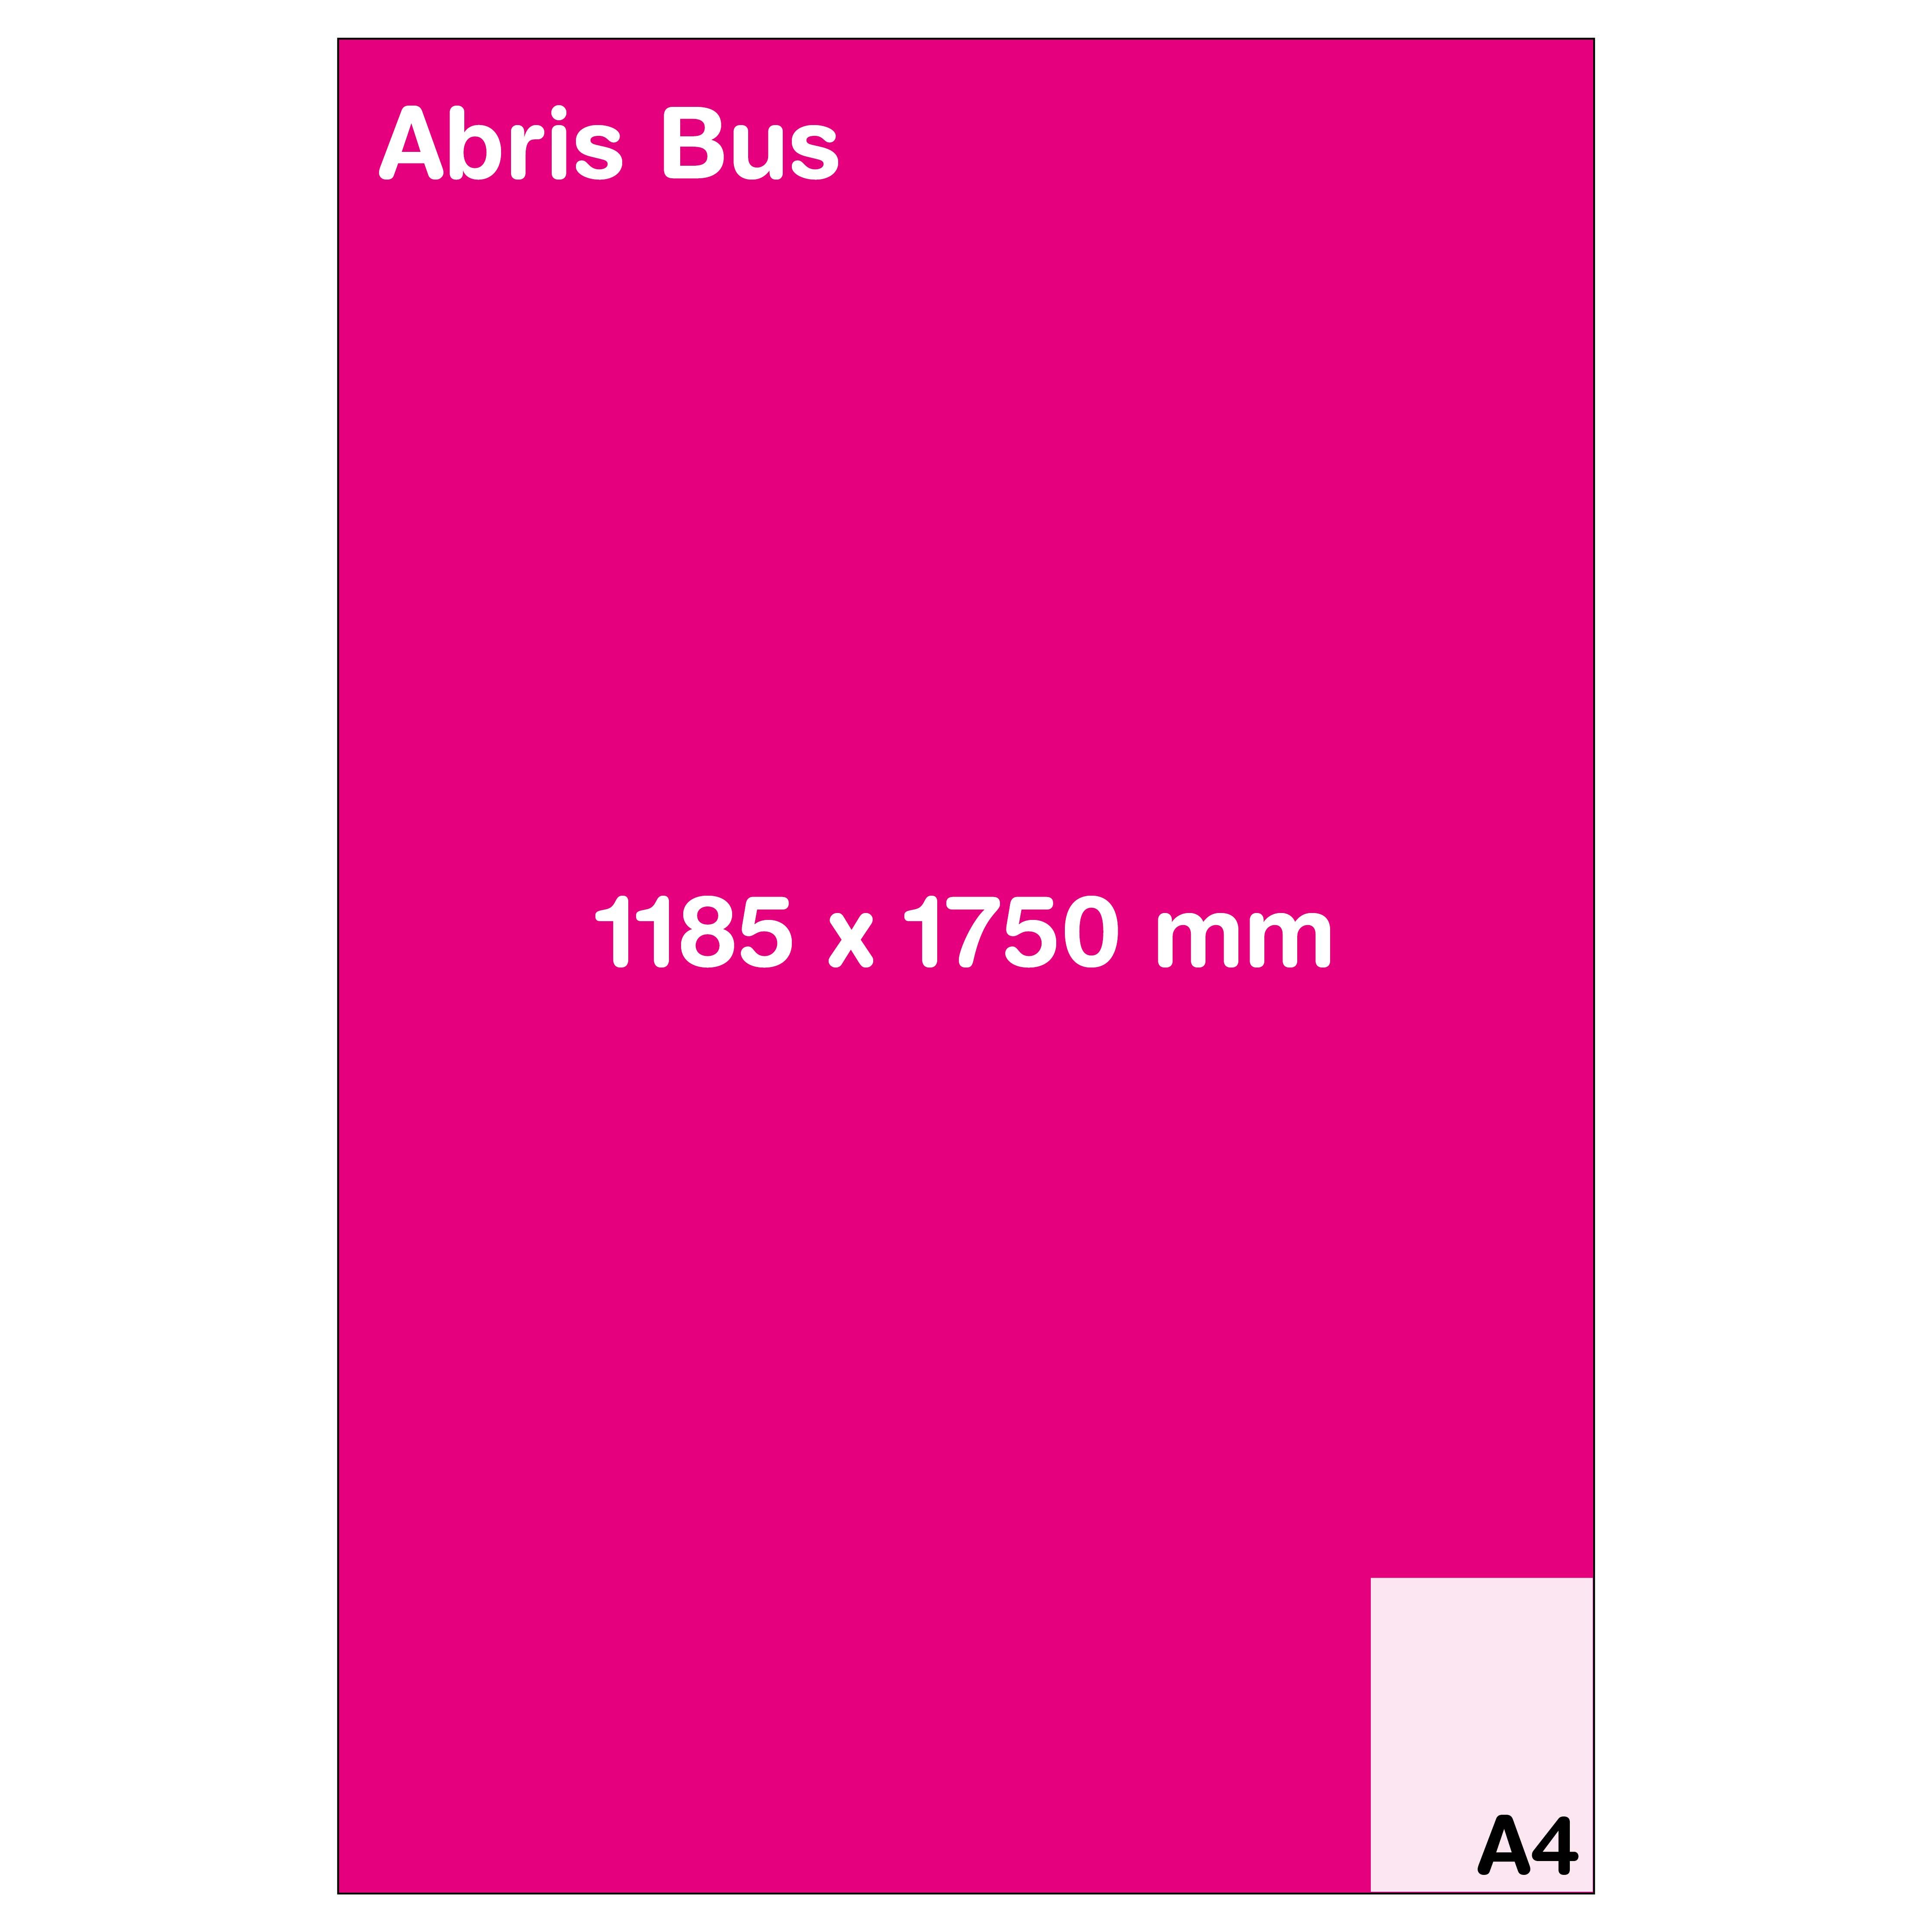 Format Abris Bus (118.5 x 17.5 cm)